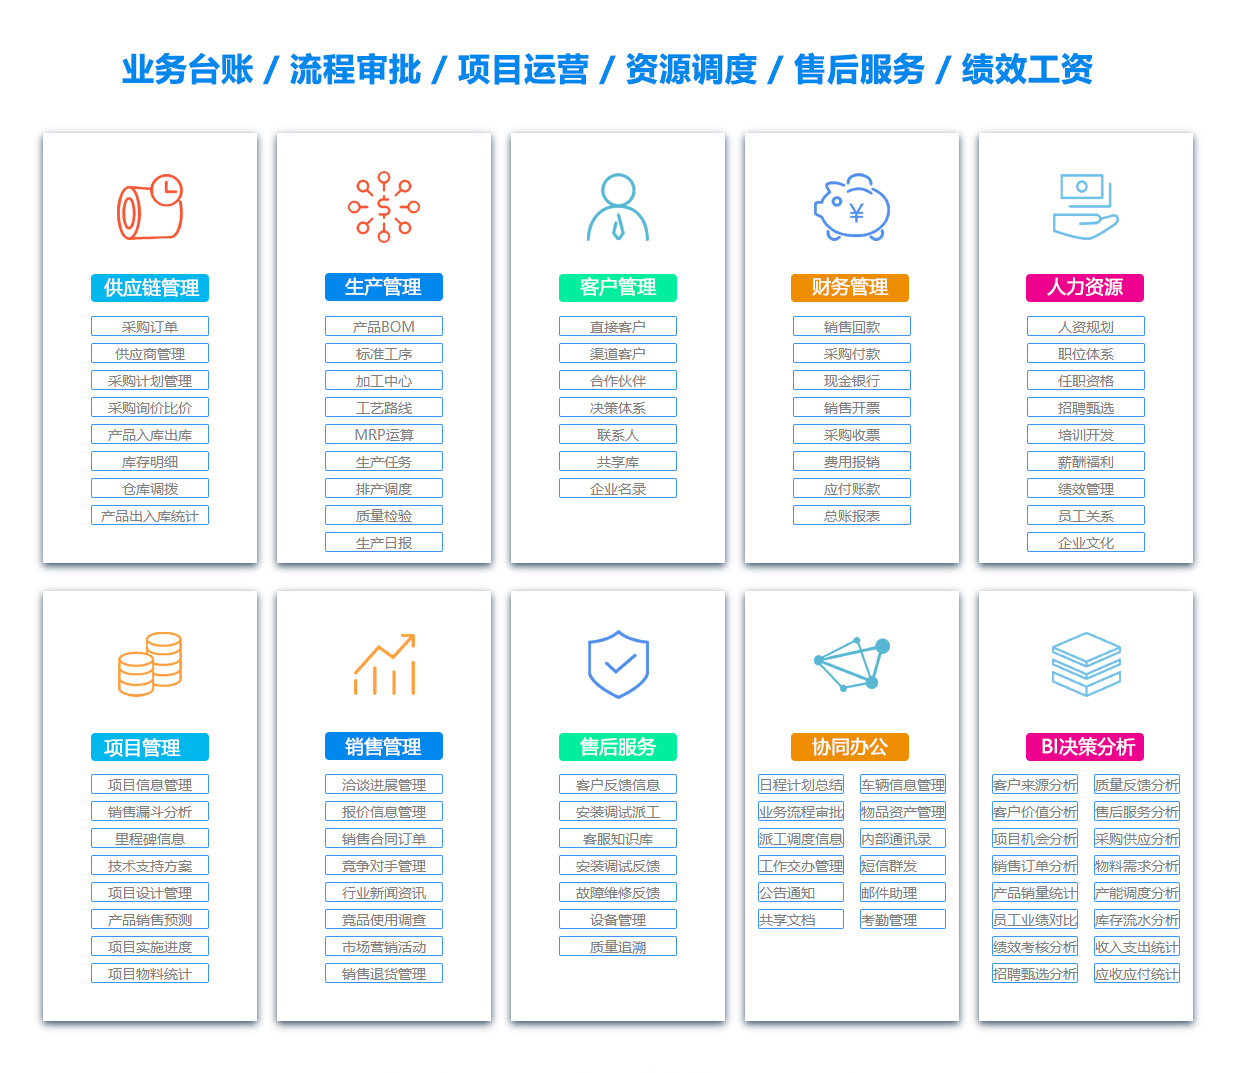 南京BOM:物料清单软件